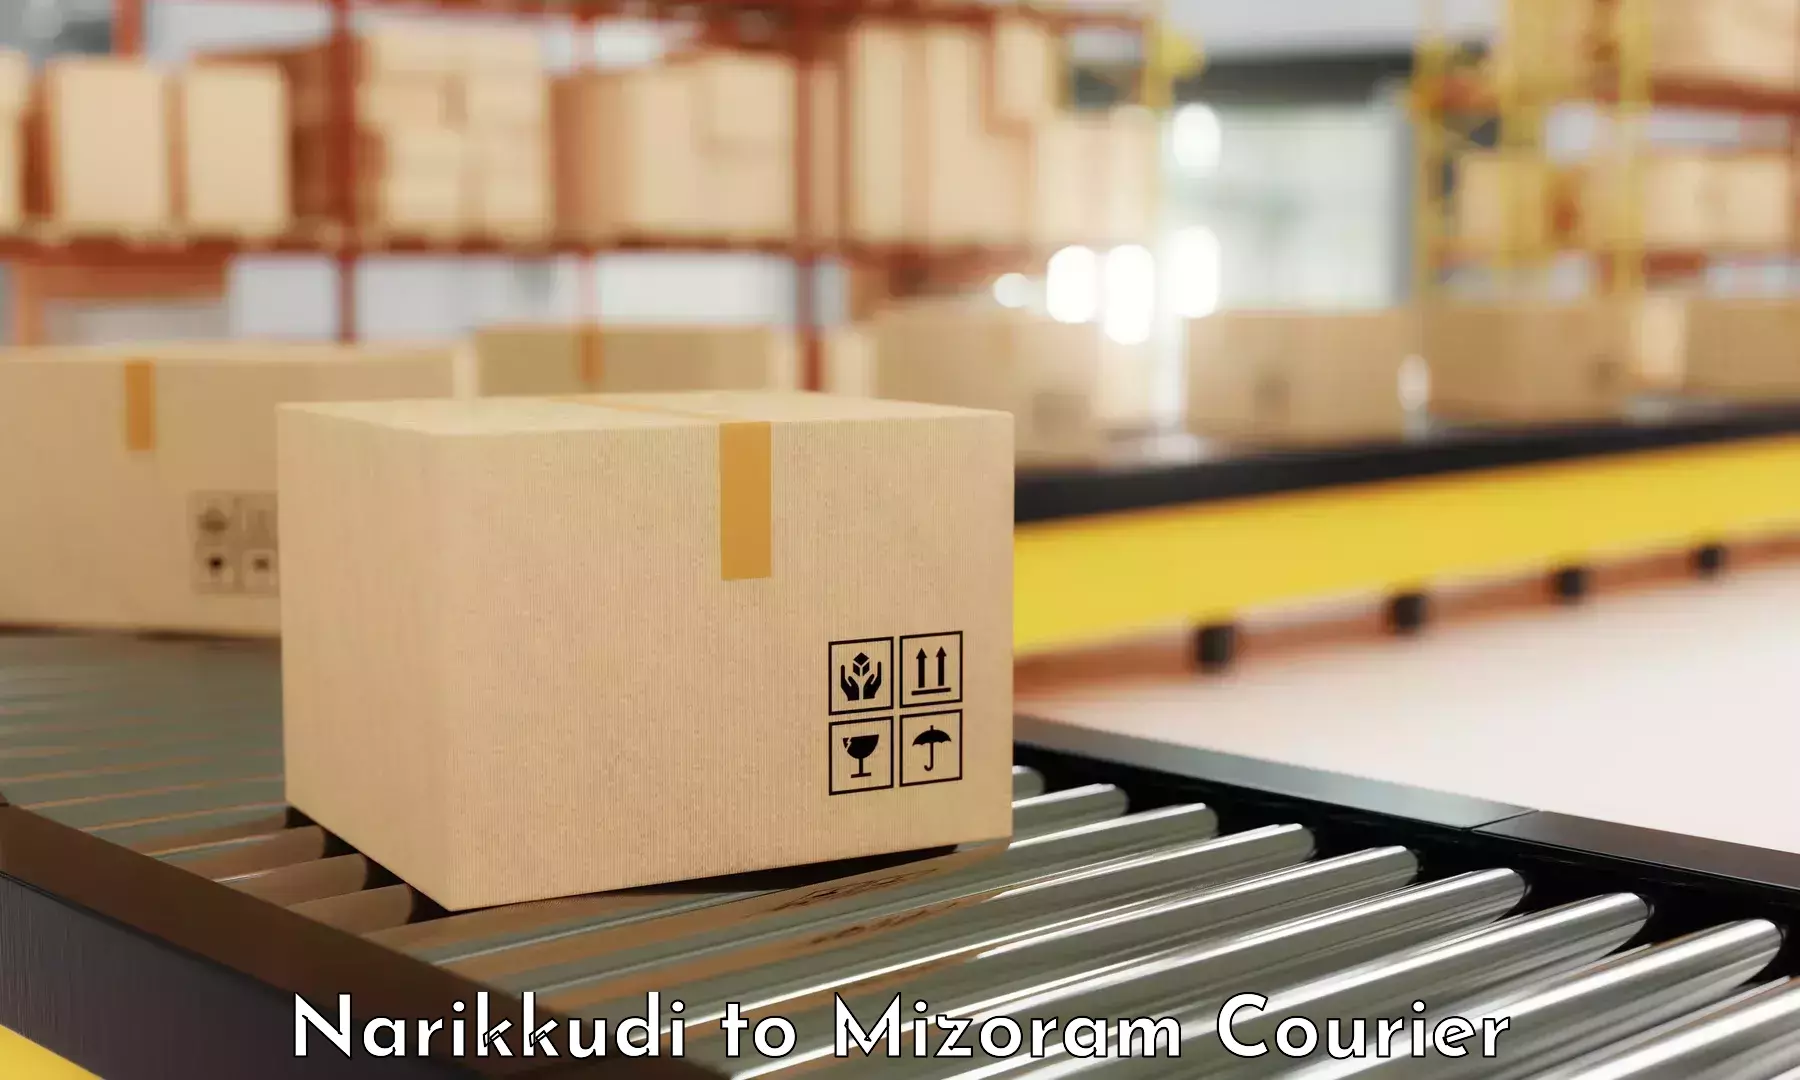 Courier service innovation Narikkudi to Lawngtlai